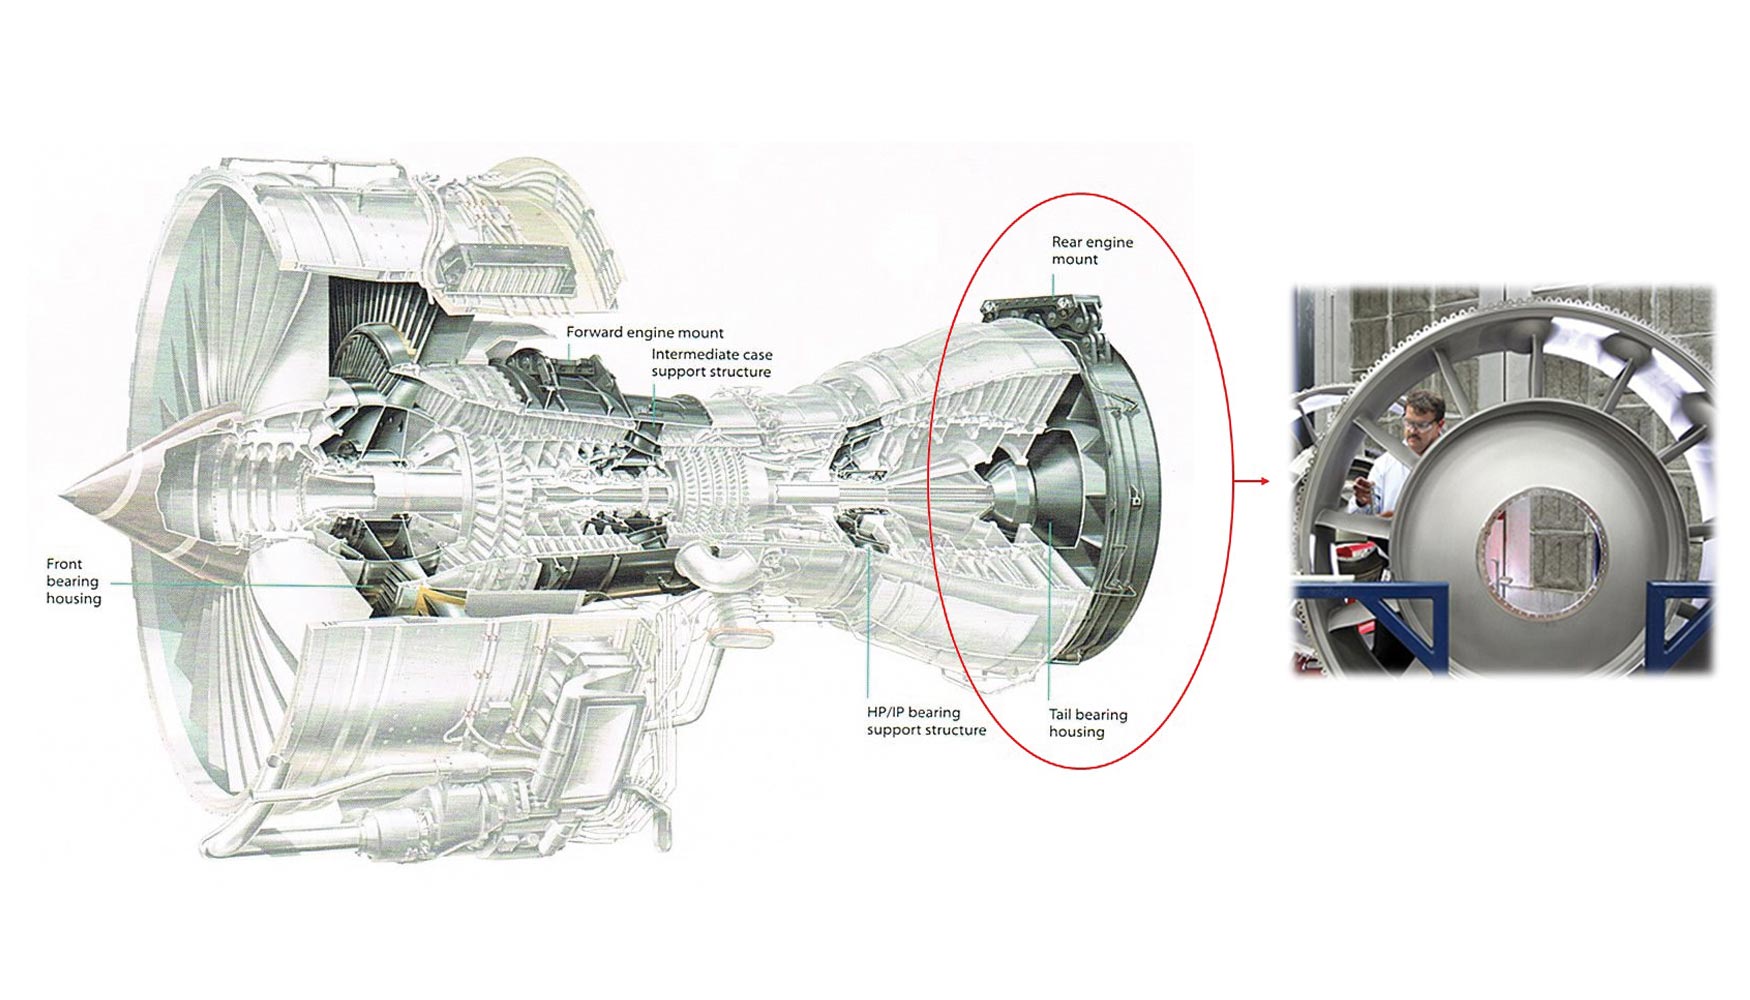 Tail Bearing Housing (TBH) en motor turbofan de la serie Trent de Rolls-Royce, junto con imagen real del componente...